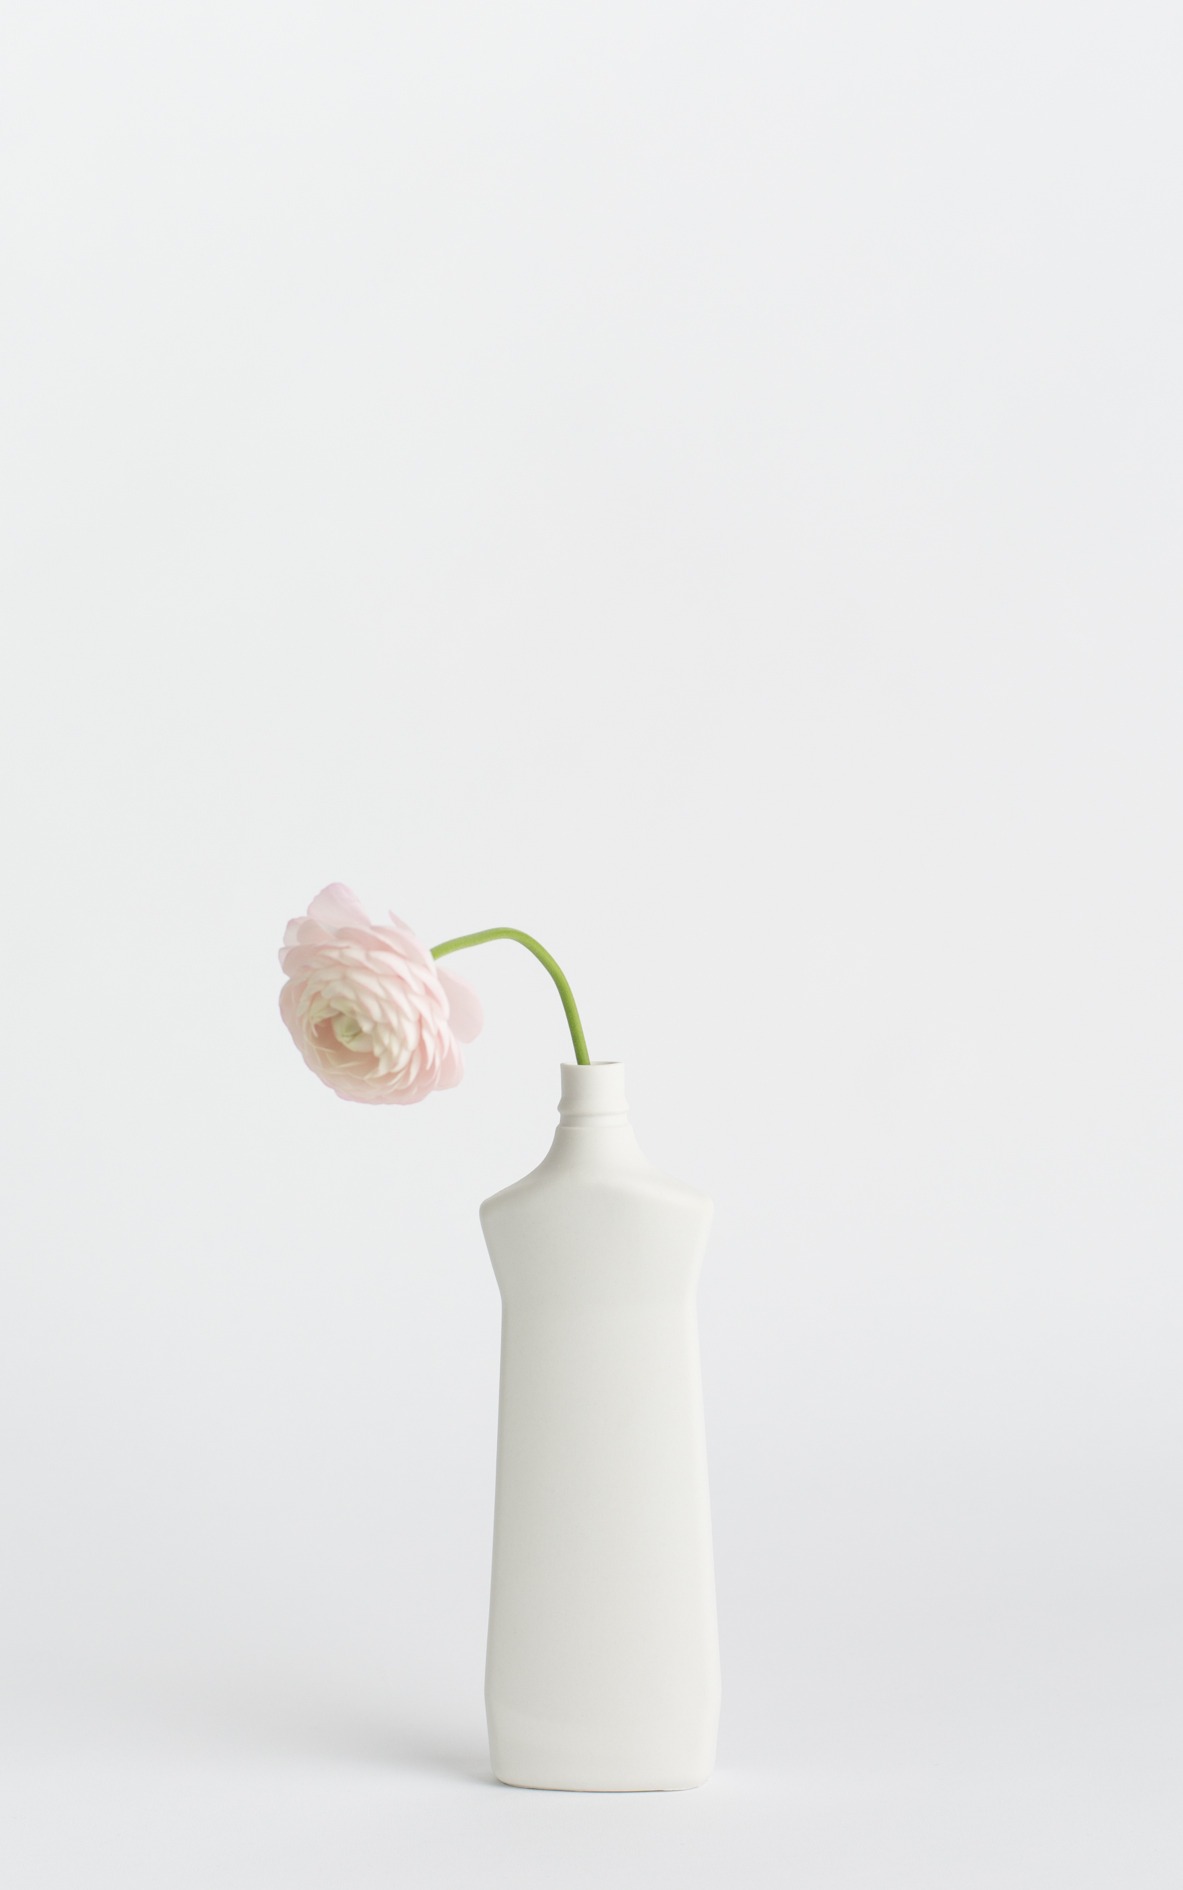 bottle vase #1 white with flower